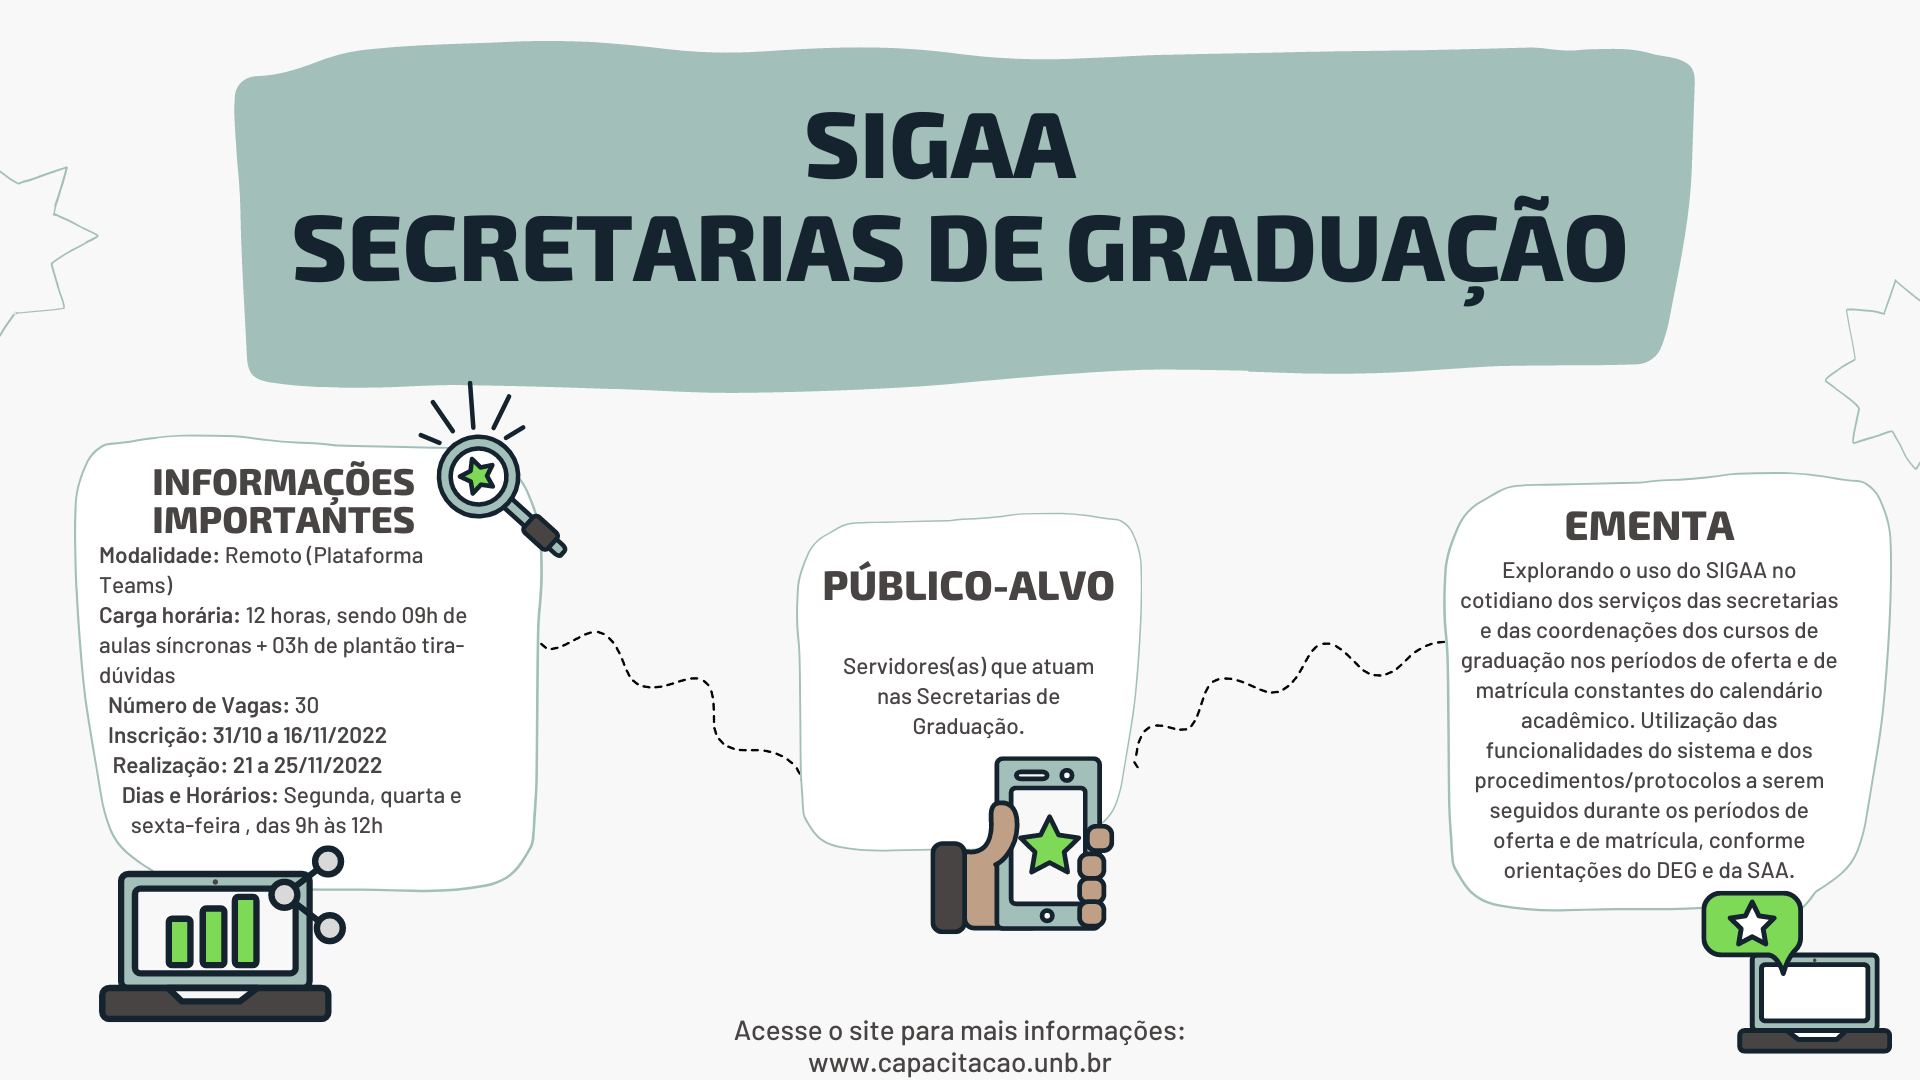 SIGAA_Secretarias_de_Graduação_-_Facebook_1.png